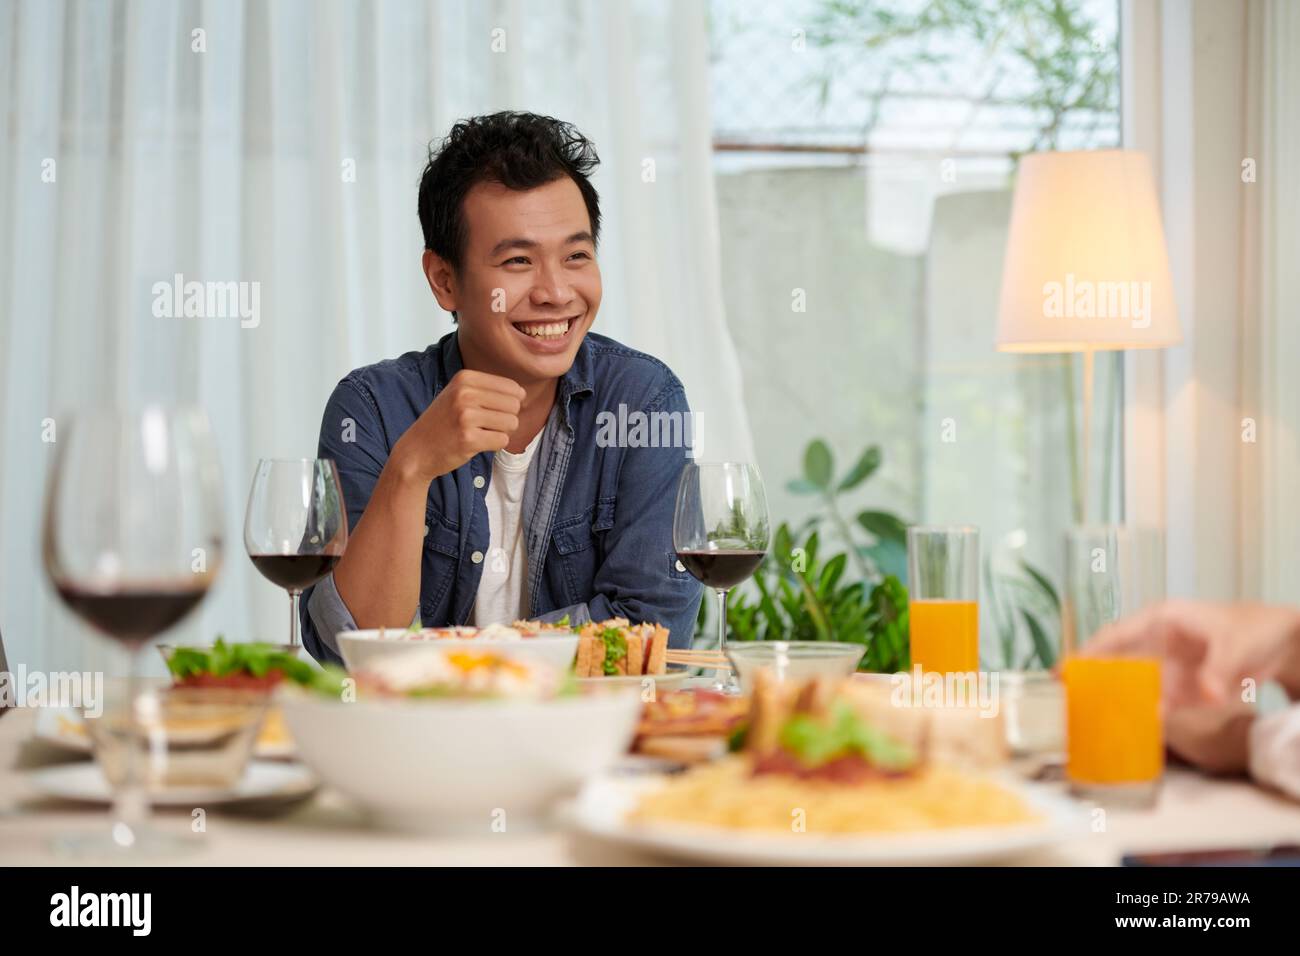 Jeune homme asiatique gai en tenue décontractée assis près d'une table servie au dîner préparé pour les invités et regardant son ami pendant la conversation Banque D'Images